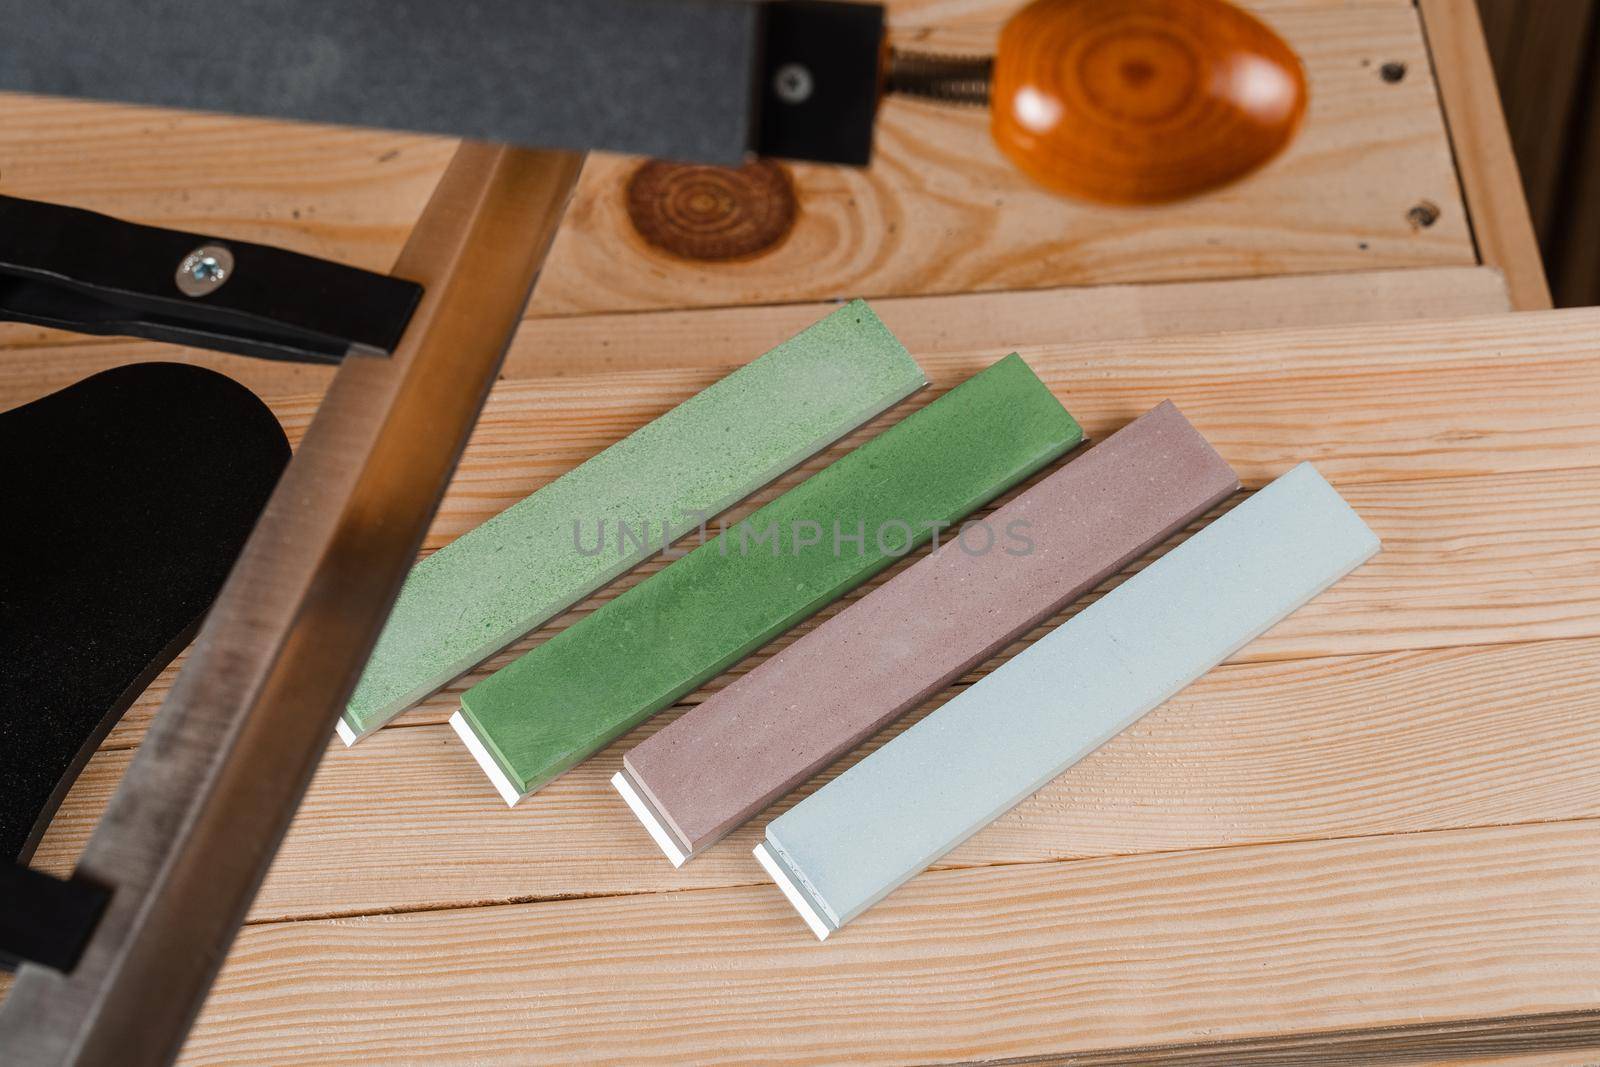 Set of professional whetstone for sharpener knife. Sharpener and whetstones